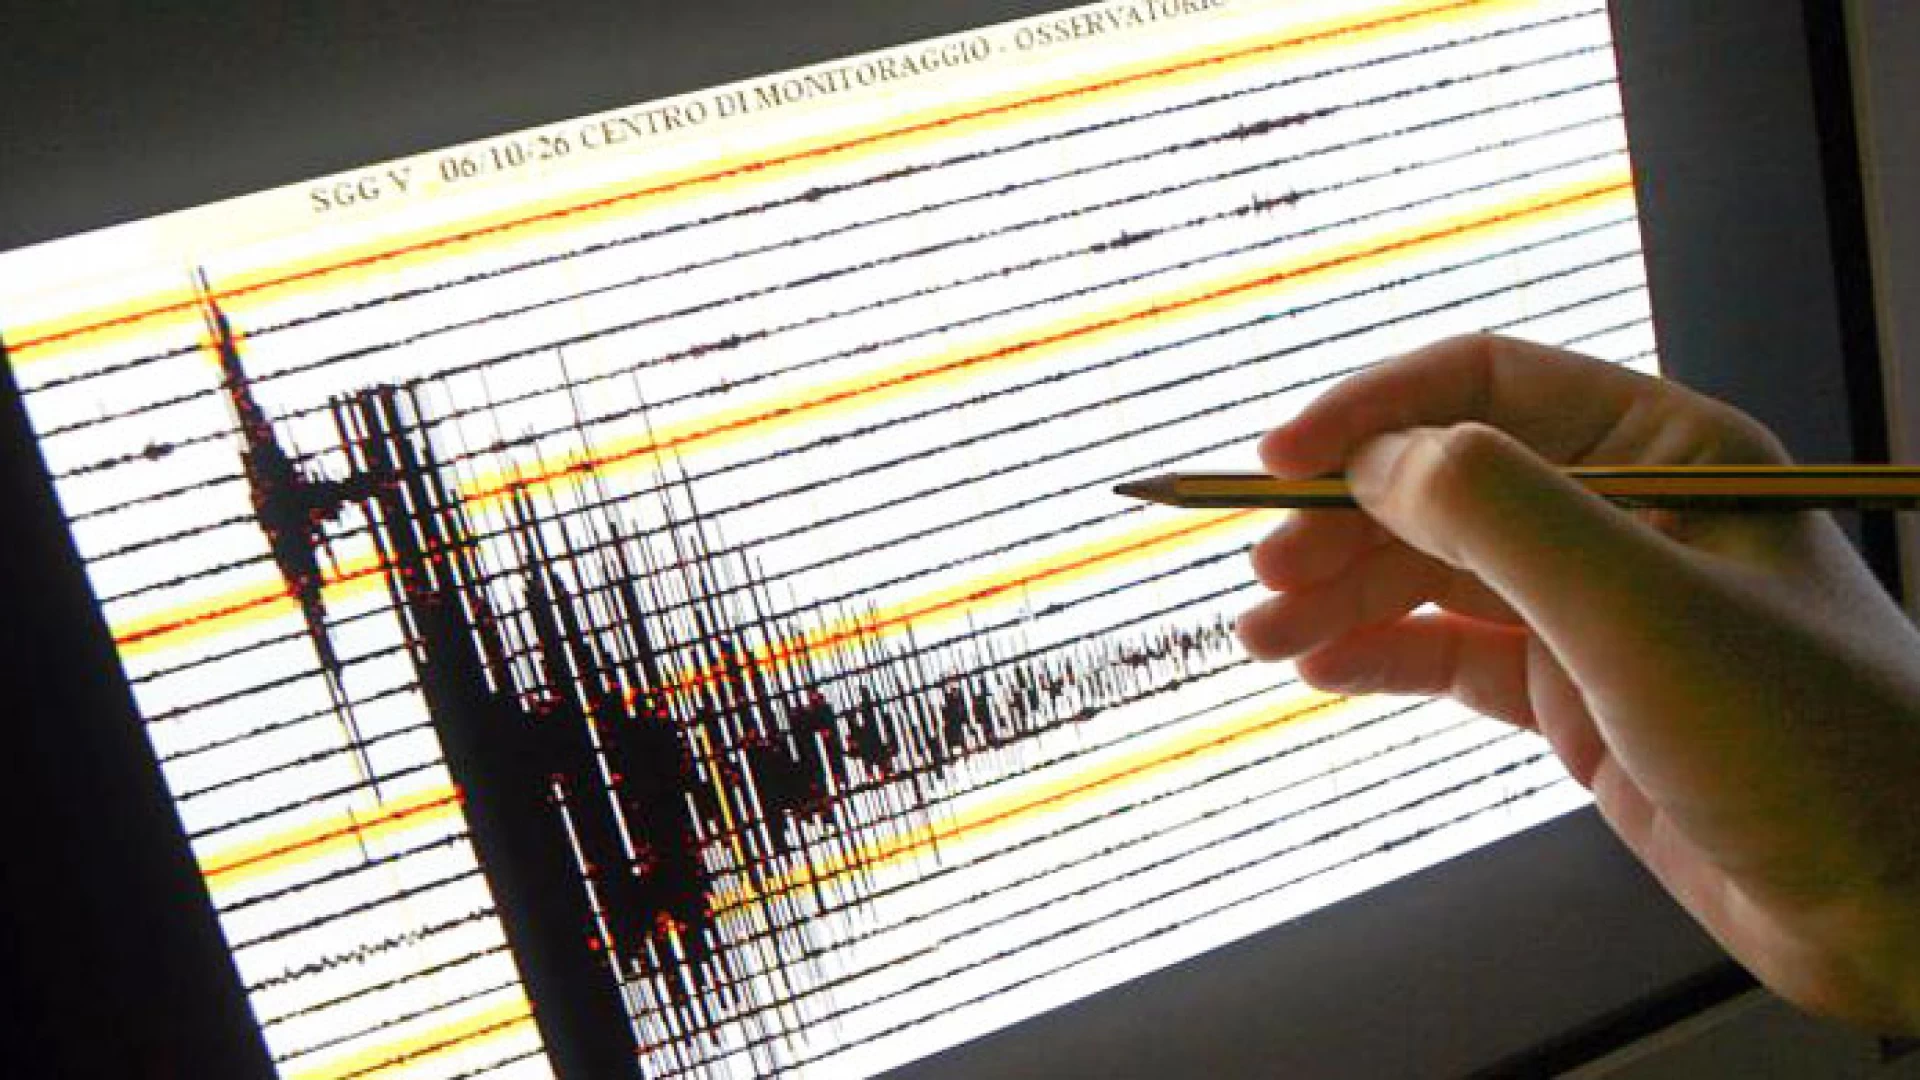 Isernia: trema la terra in Provincia. Scossa di terremoto di magnitudo 2.4 registrata a Castelpizzuto.